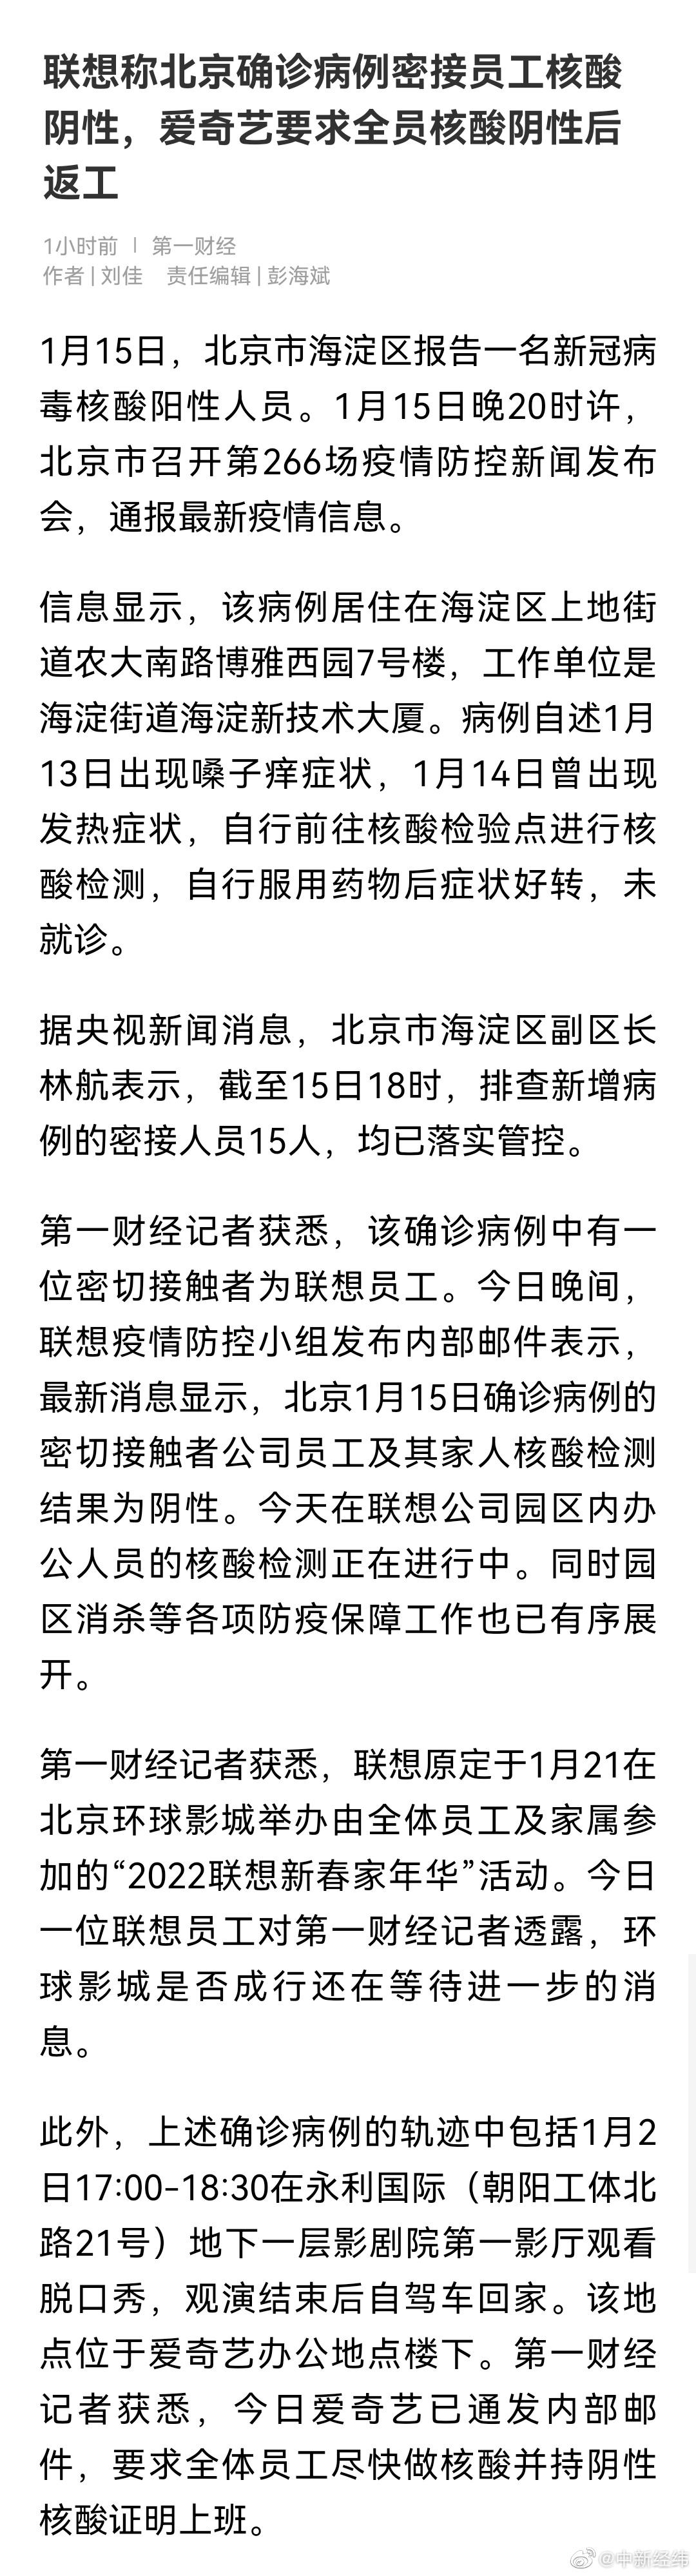 联想称北京确诊病例密接员工核酸阴性，爱奇艺要求员工核酸阴性后返工